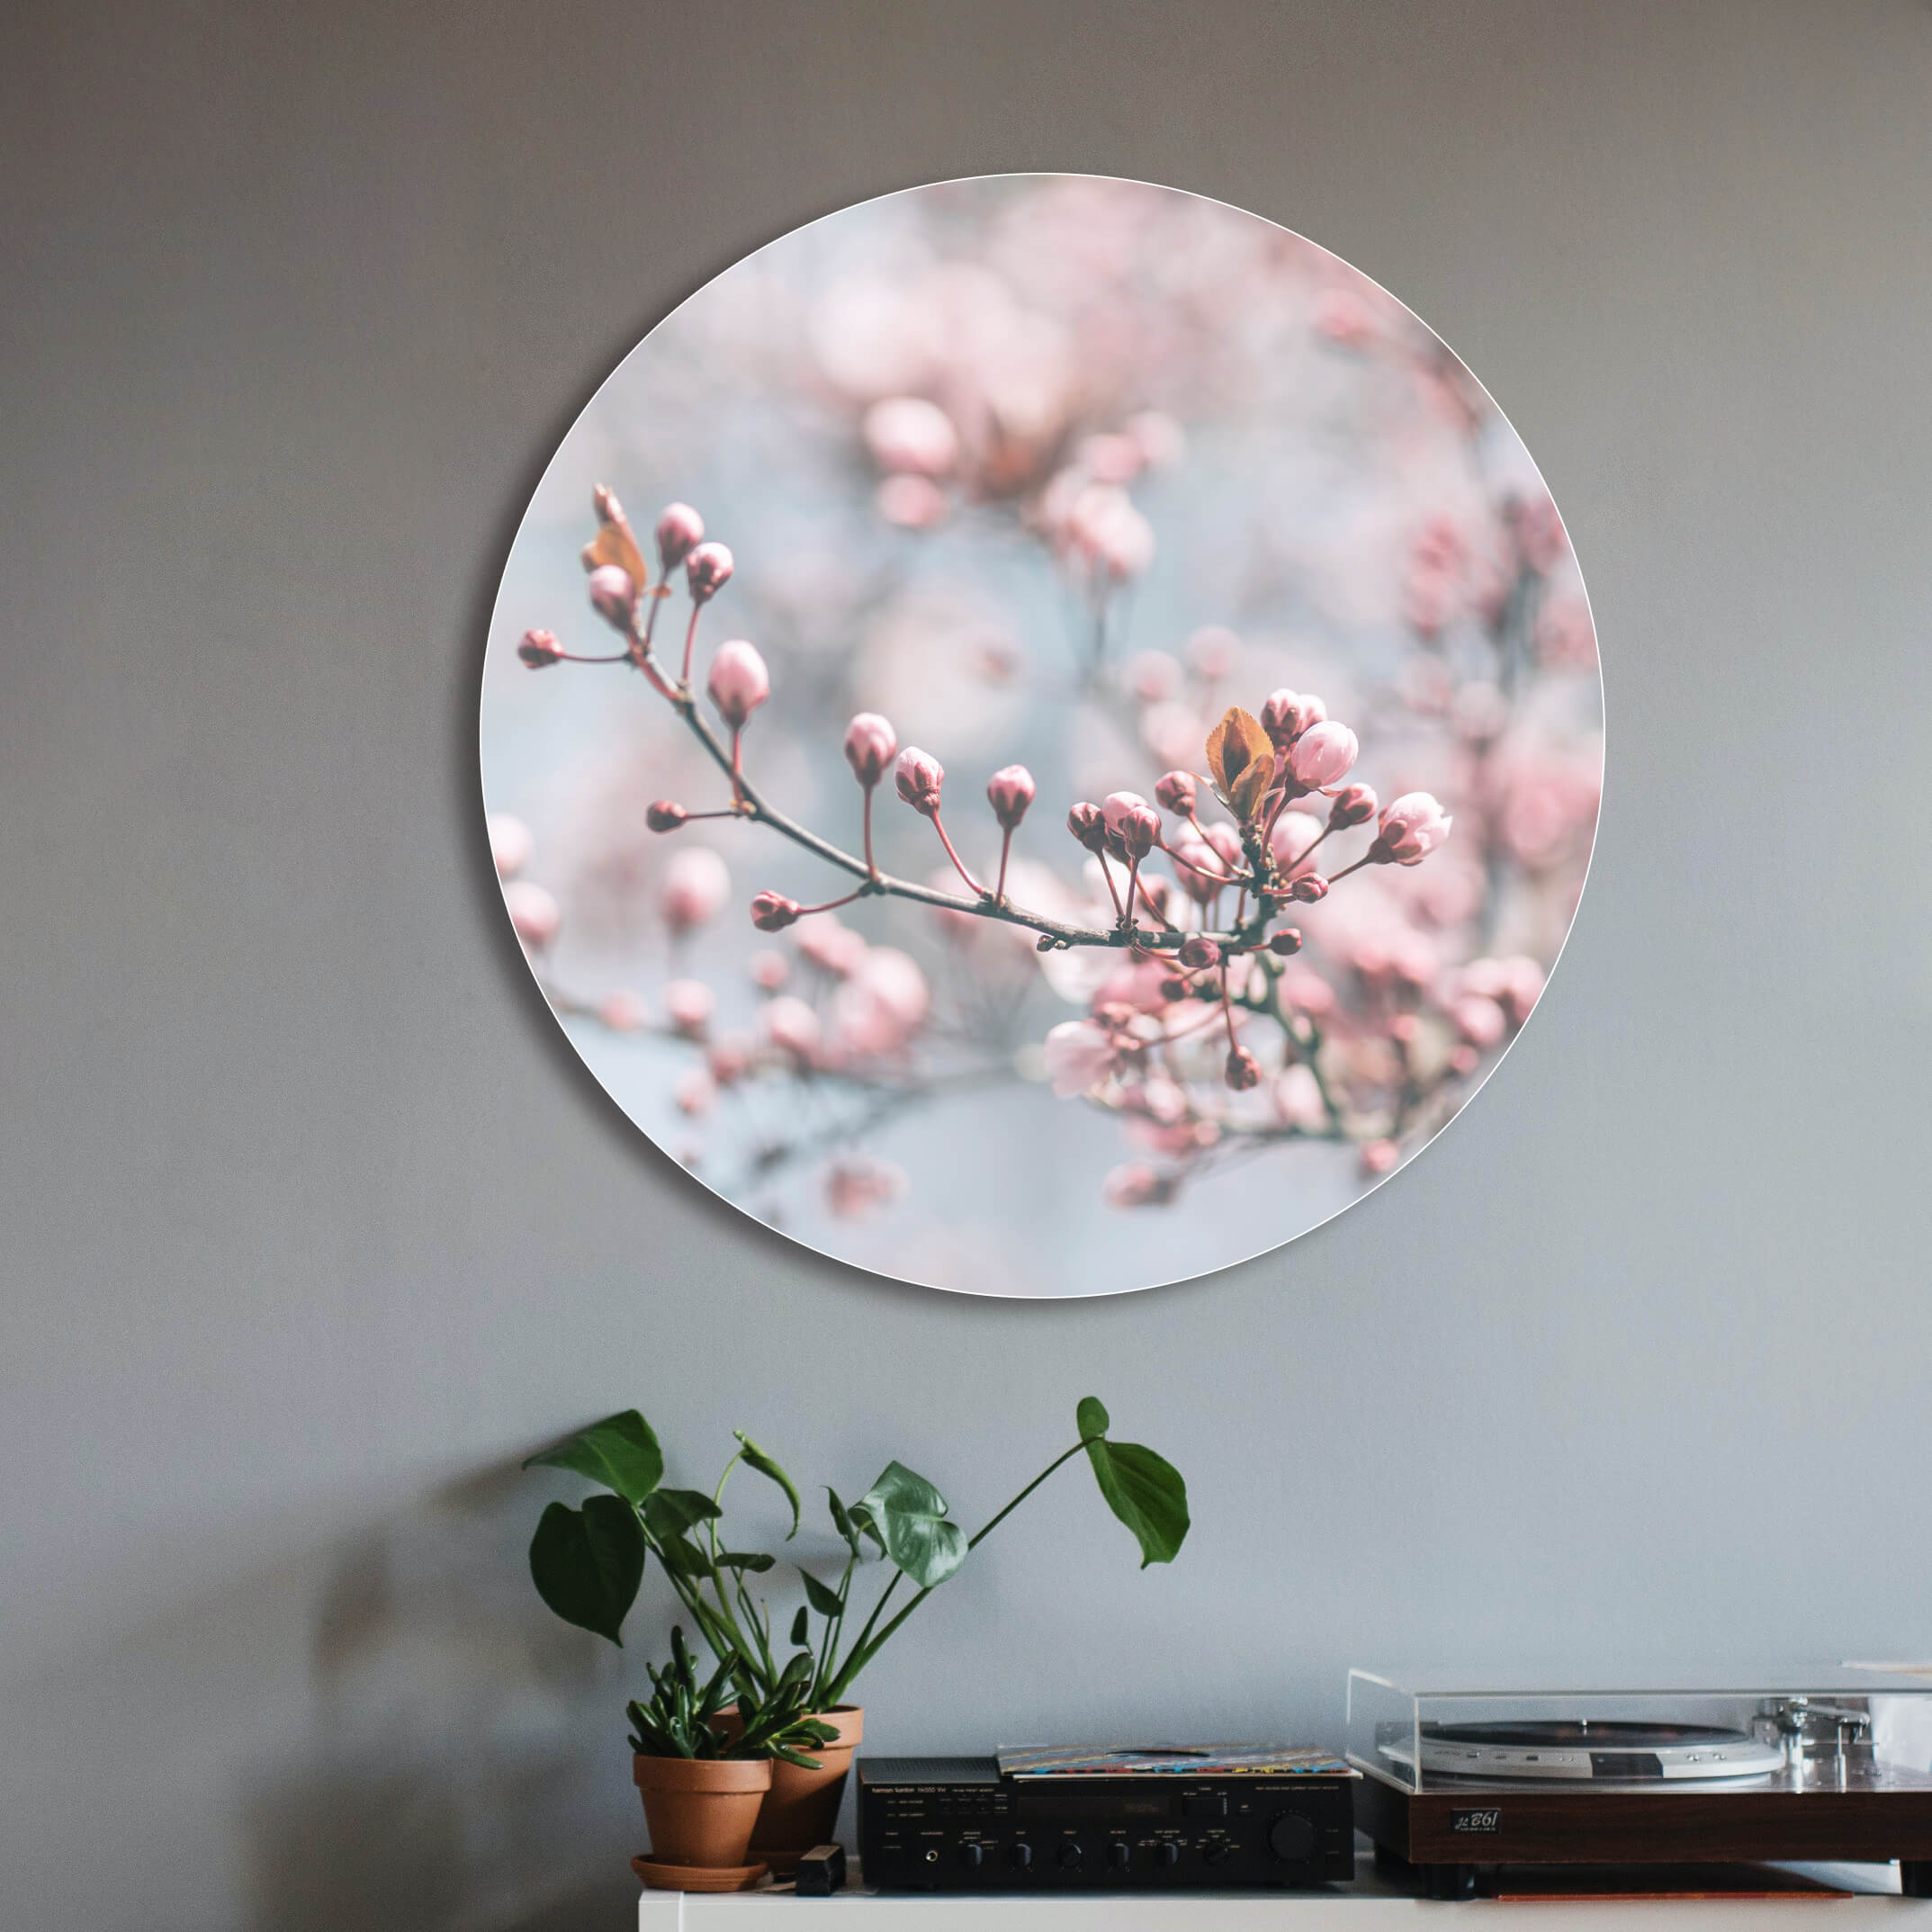 Rundes Akustikbild im Wohnzimmer mit Blüten als Motiv hängend an einer Wand vor einem Plattenspieler und Pflanzen